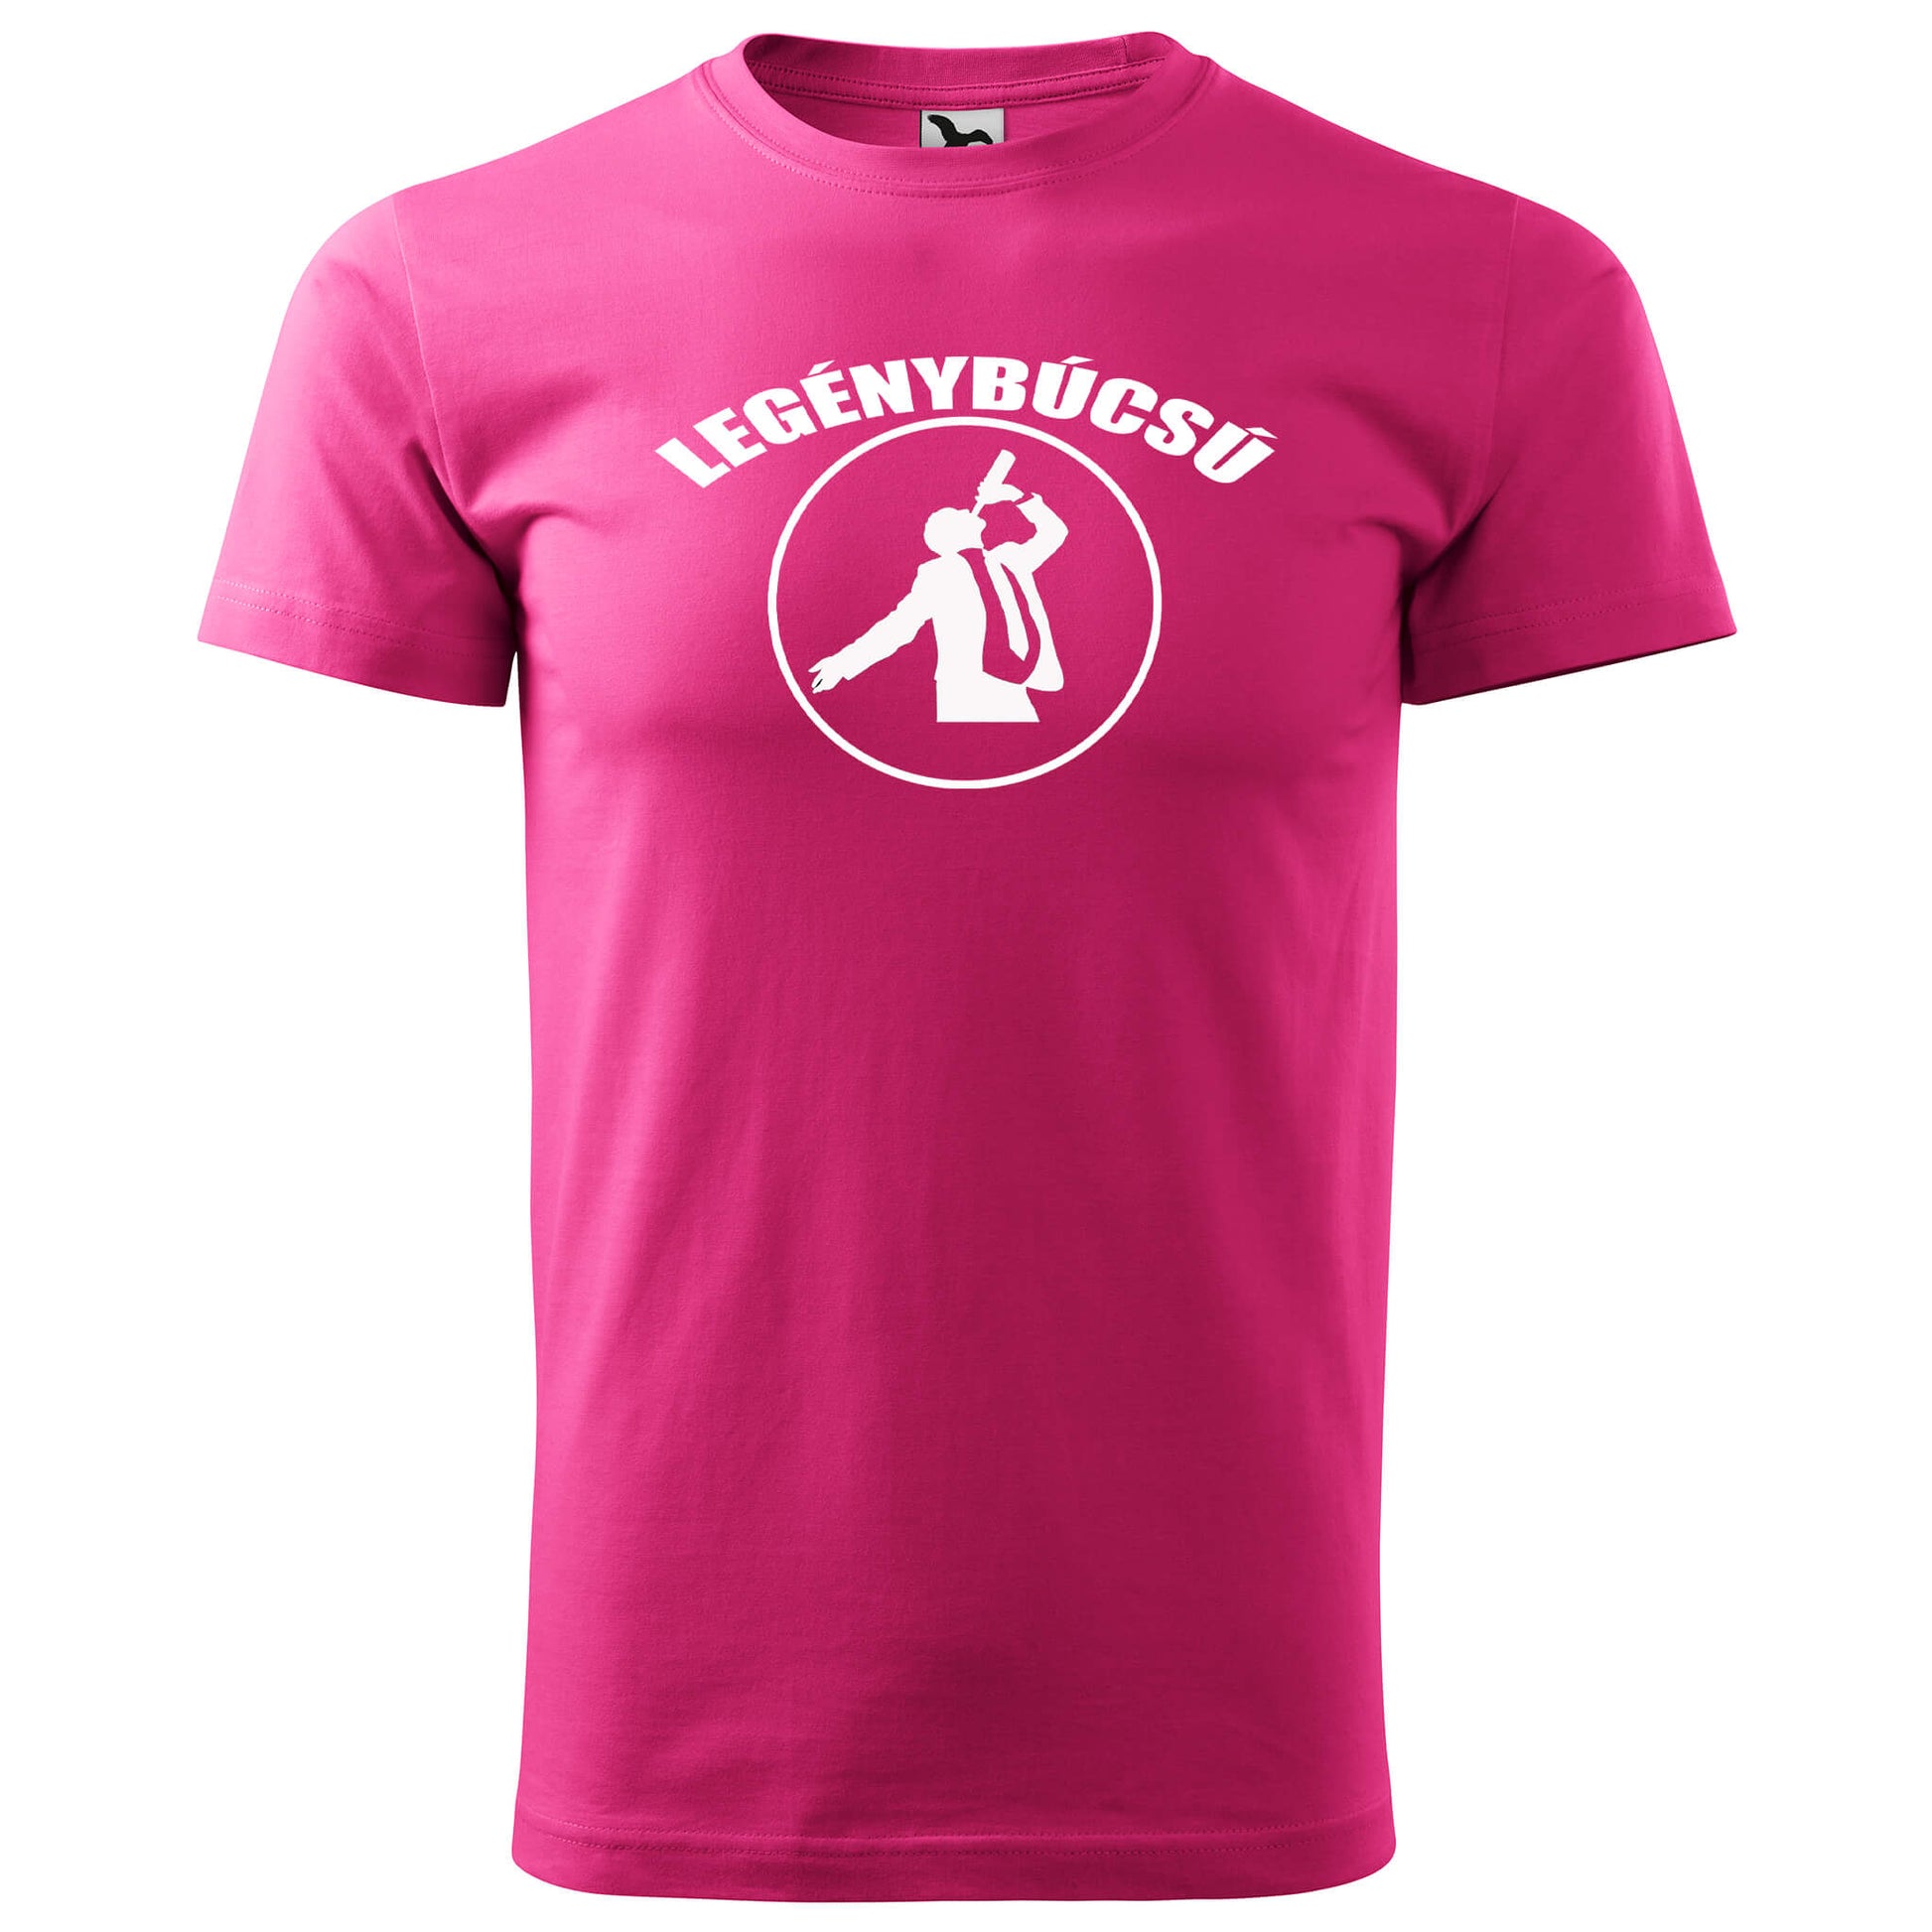 T-shirt - Legénybúcsú - Customizable - rvdesignprint